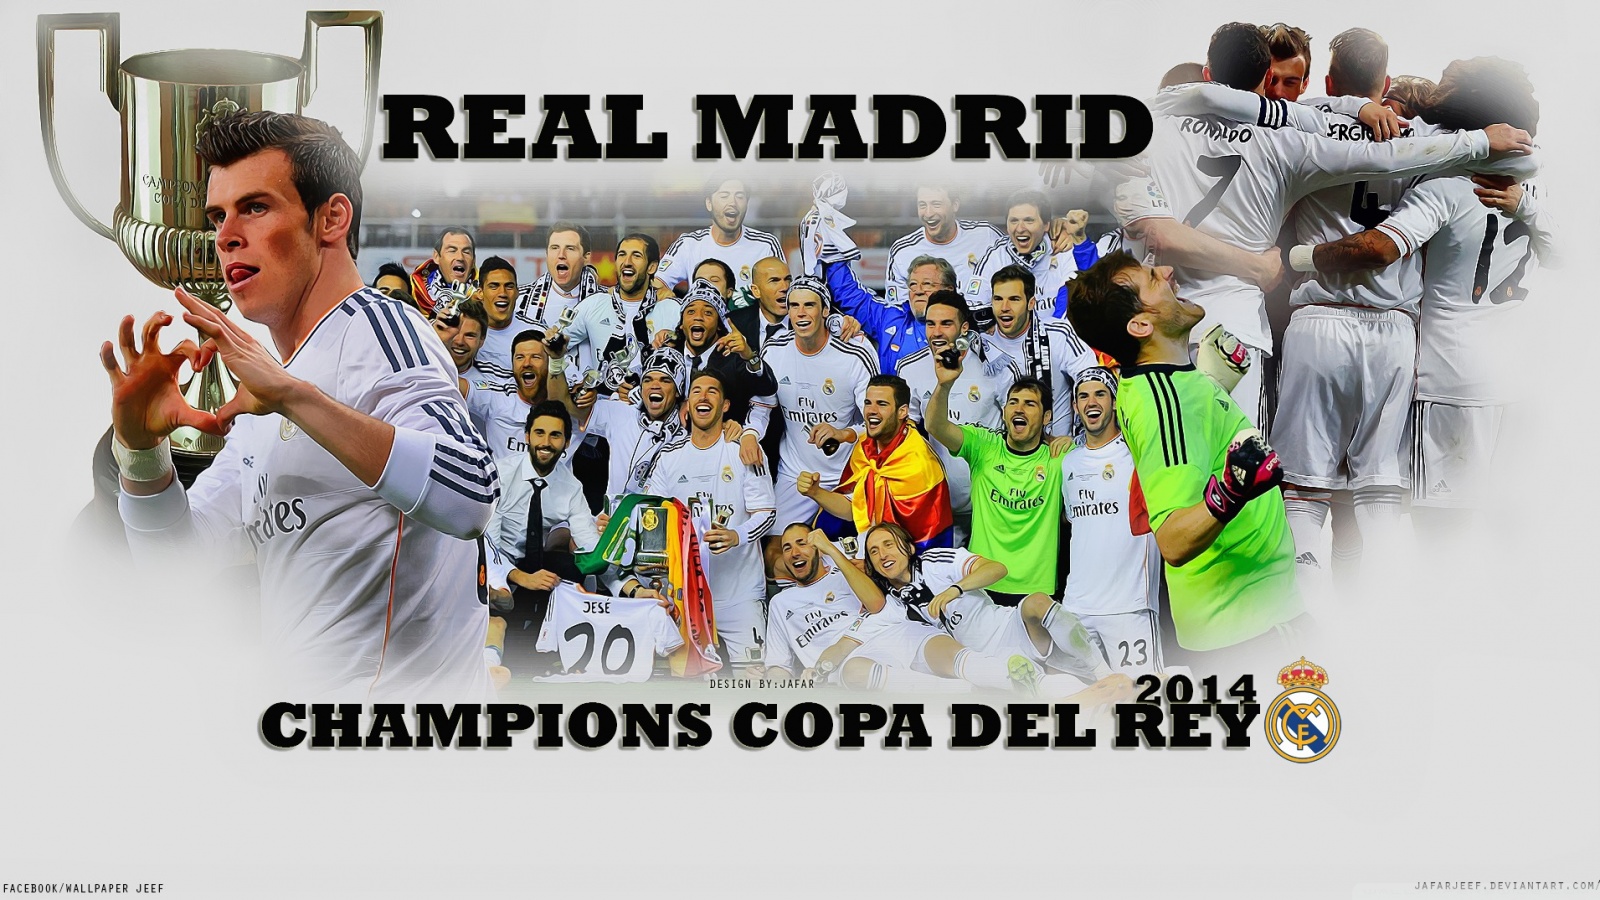 REAL MADRID CHAMPIONS COPA DEL REY 2014 HD Desktop Wallpaper